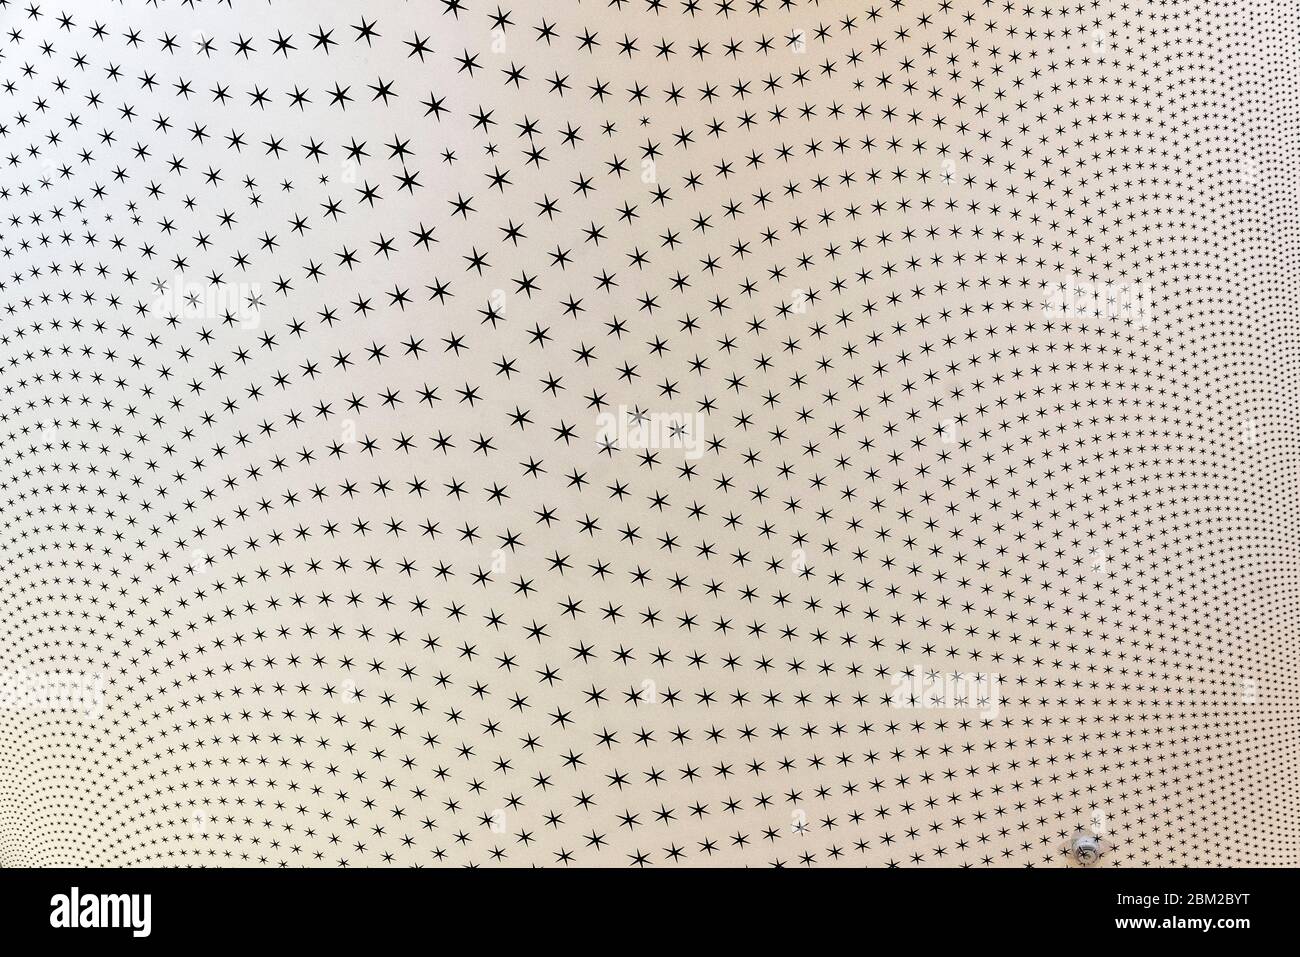 Parete, soffitto o murale con sei stelle puntate che producono un effetto visivo o illusione ottica come sfondo astratto Foto Stock